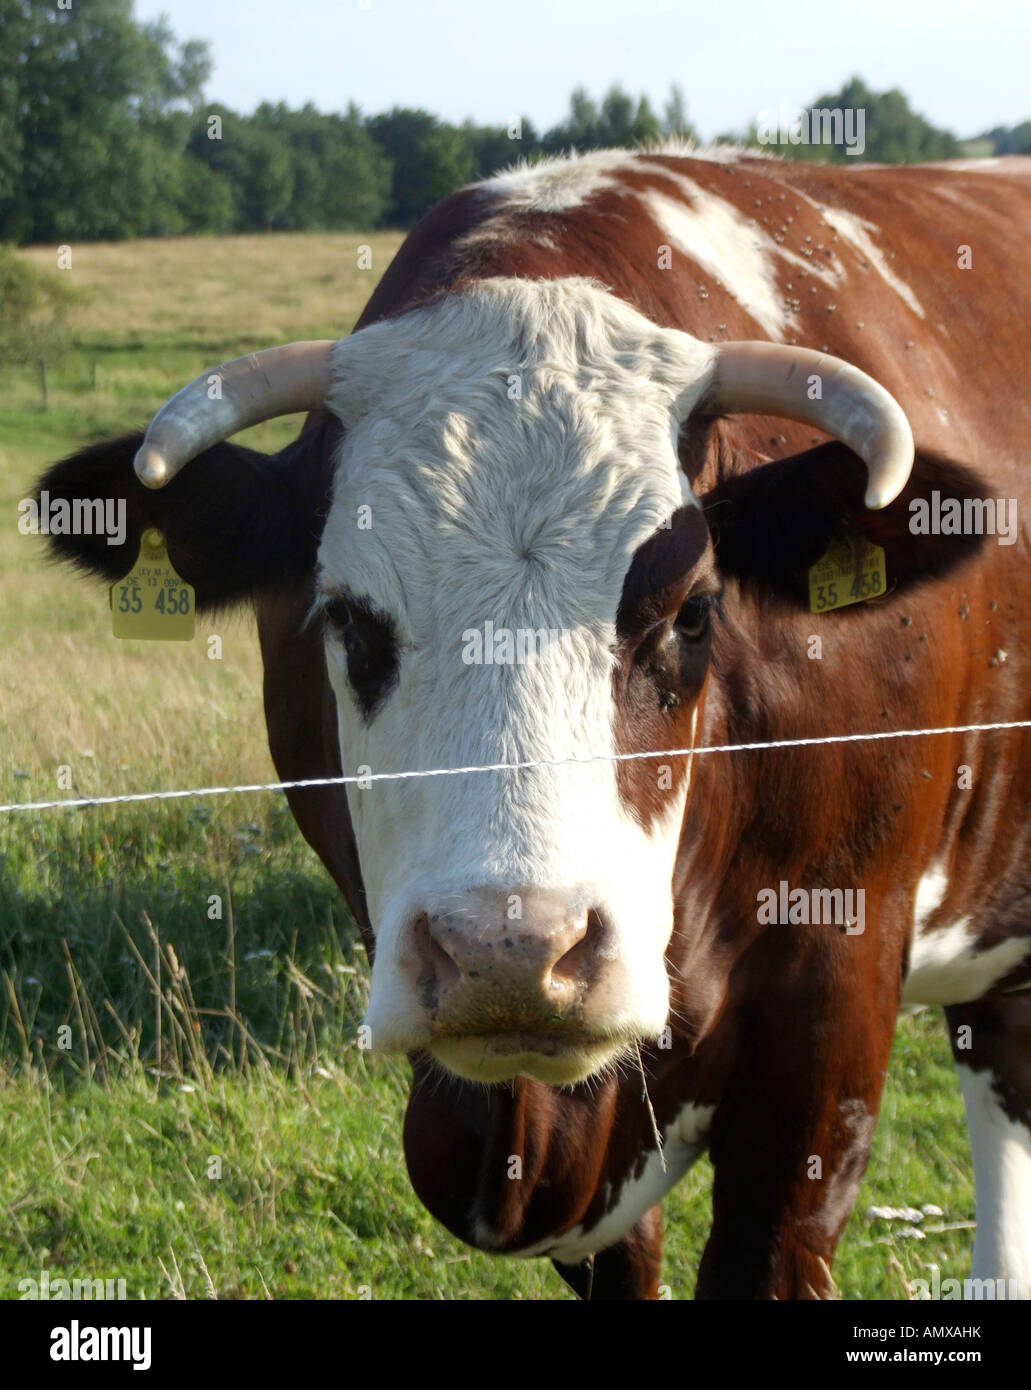 Cow on pasture Stock Photo